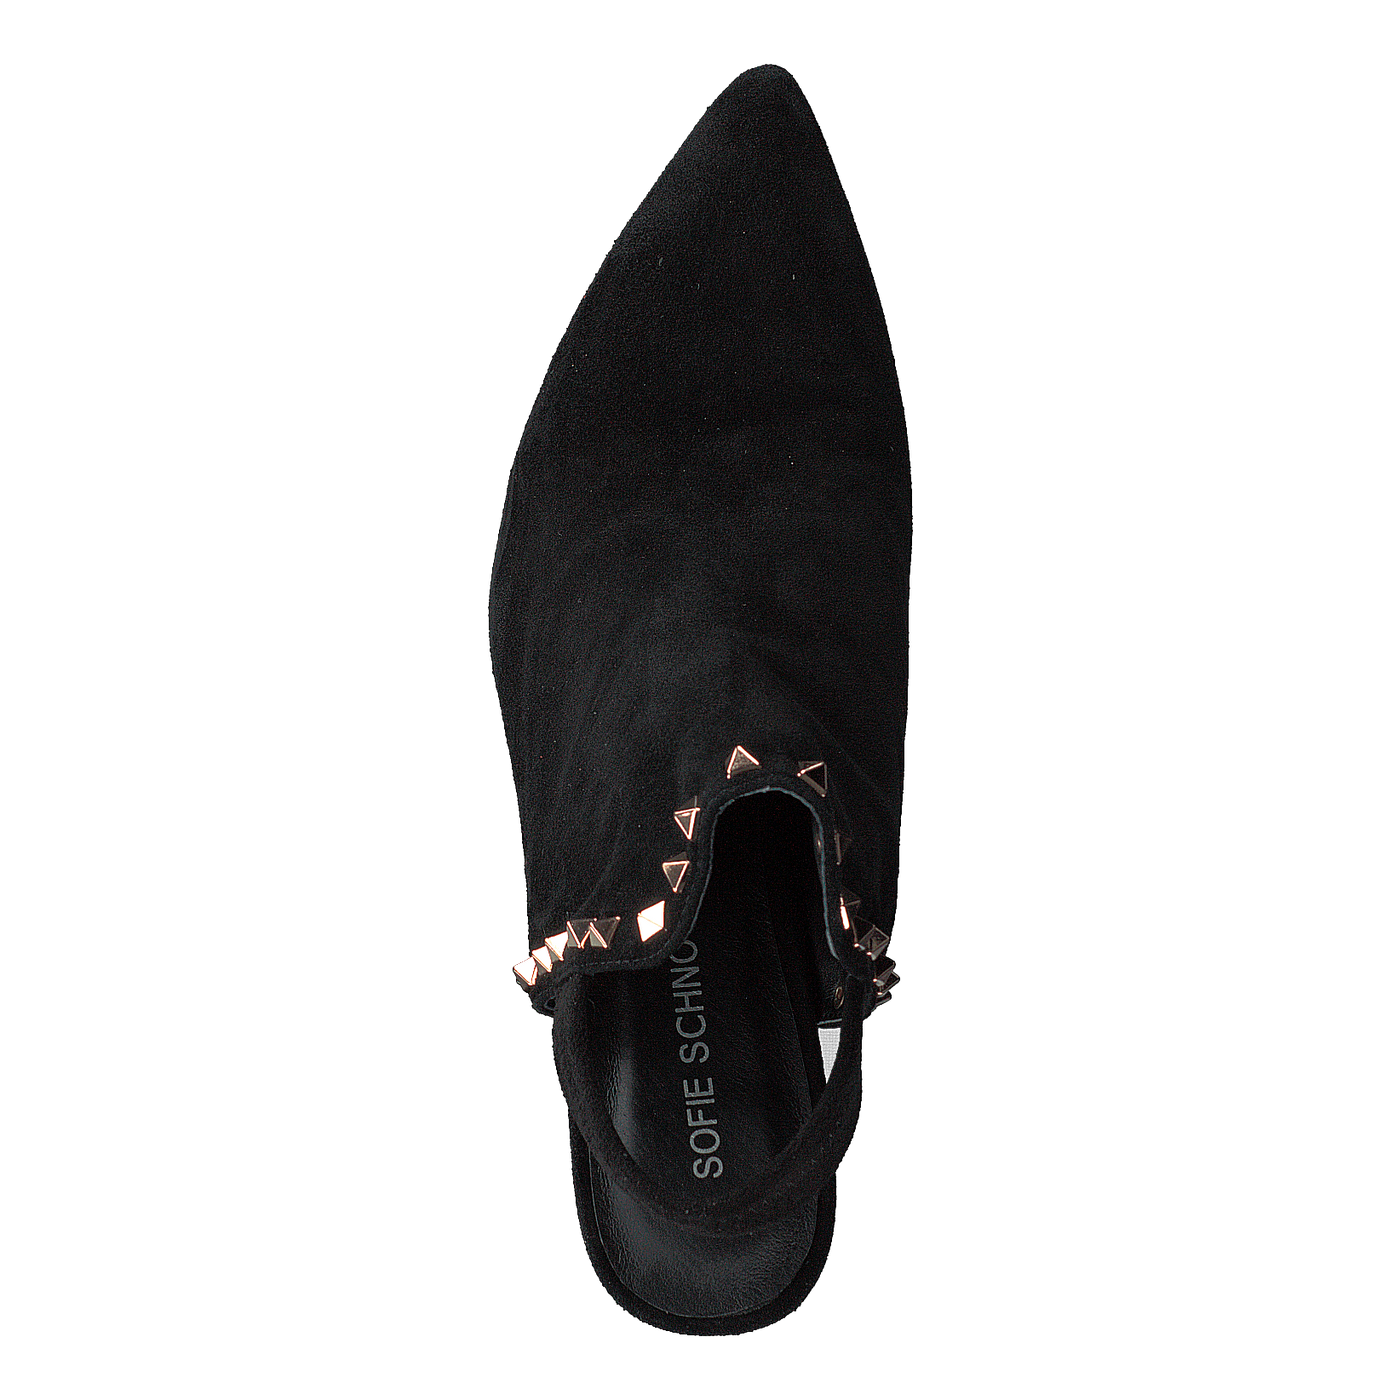 Shoe Stiletto Slipper Blk - Black